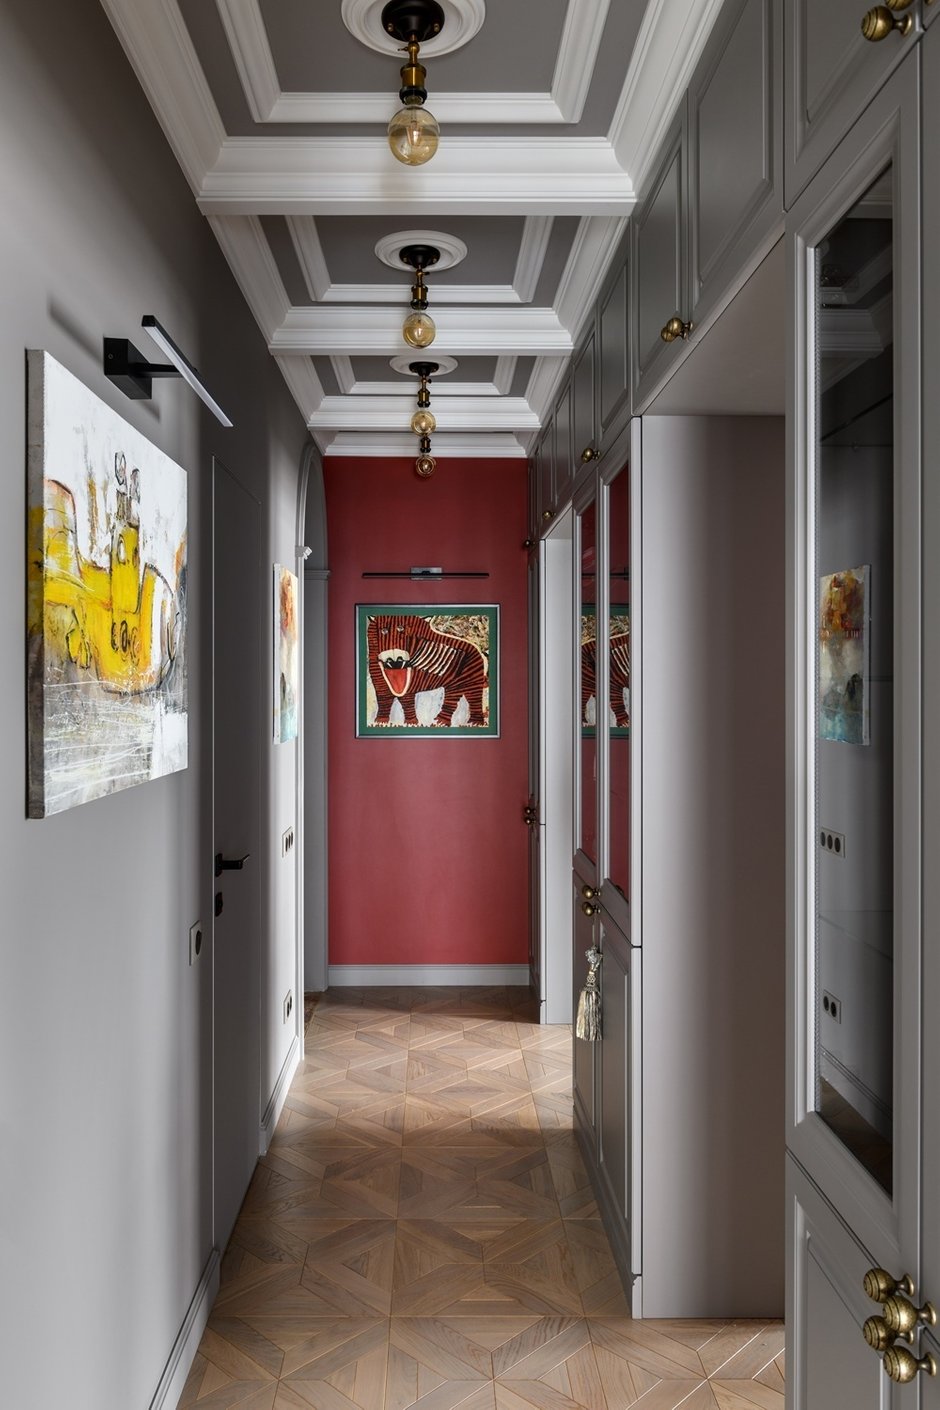 Картины в коридоре «Подводная лодка» и «Тигр» — из коллекции заказчицы Новосибирского художника Алексея Гайденко. Вокруг картинной галереи и библиотеки и был соткан весь интерьер.